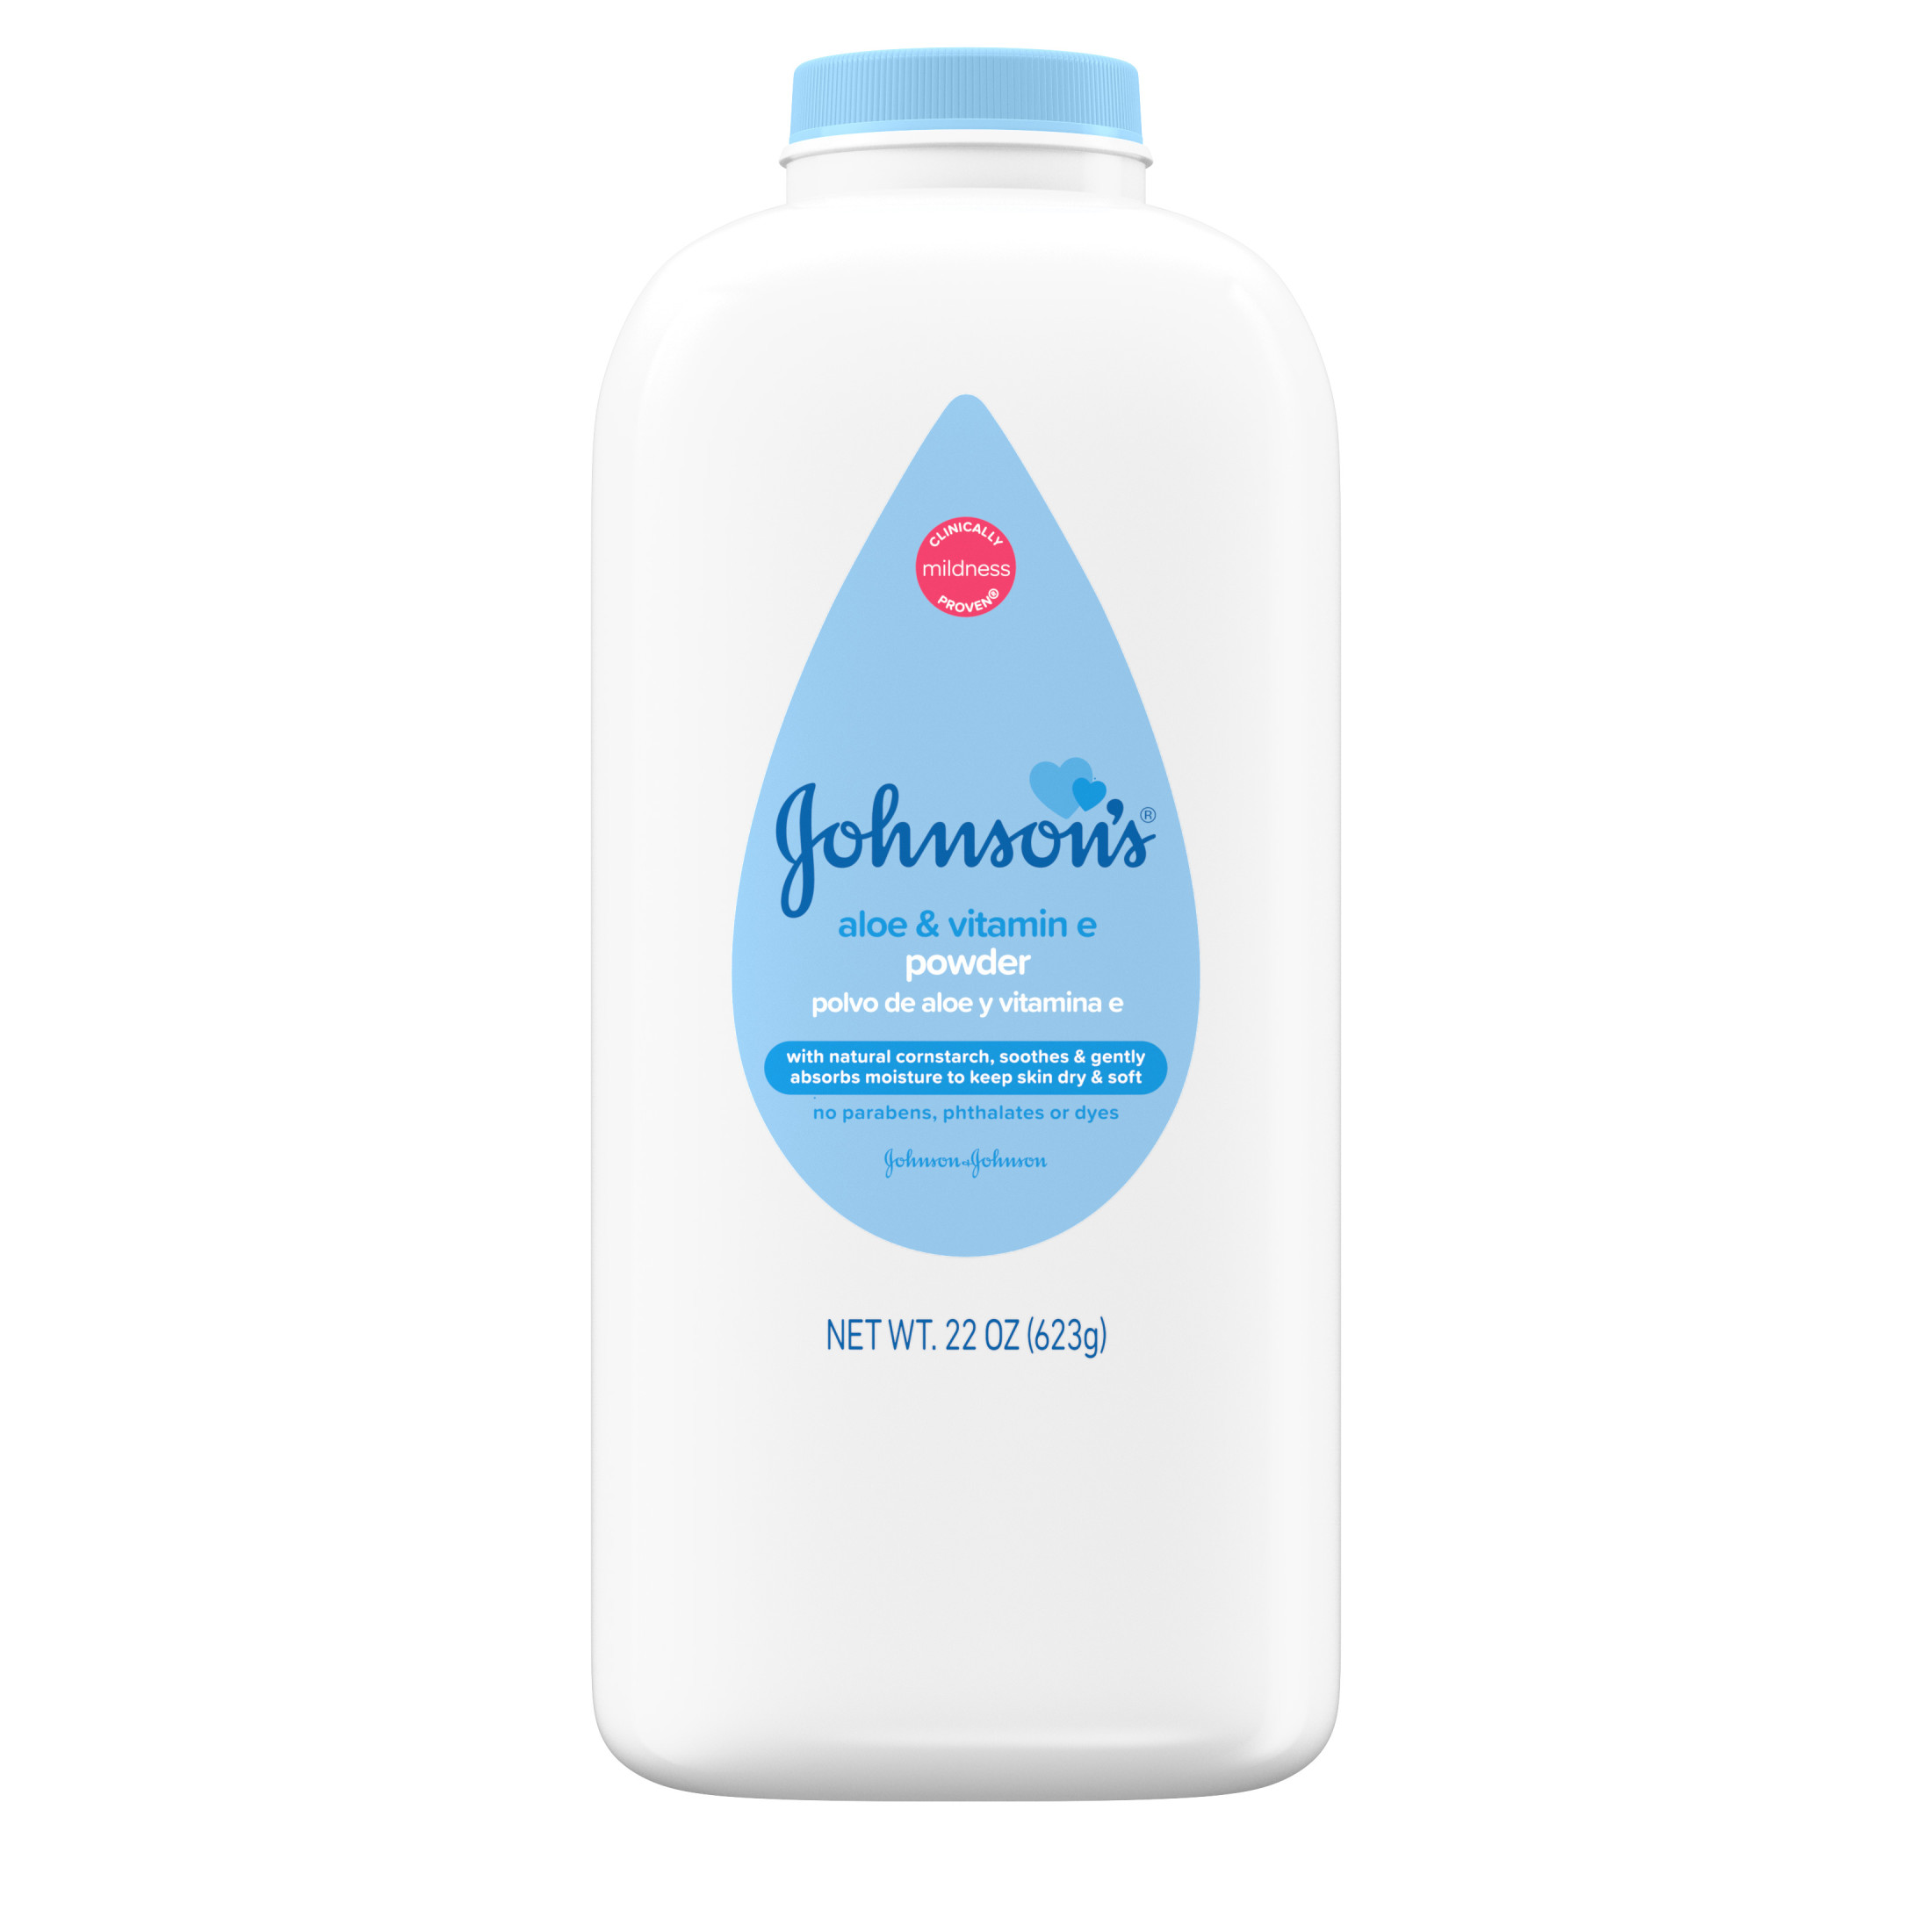 Johnson's Cornstarch Baby Powder with Aloe & Vitamin E, 22 oz - image 1 of 6